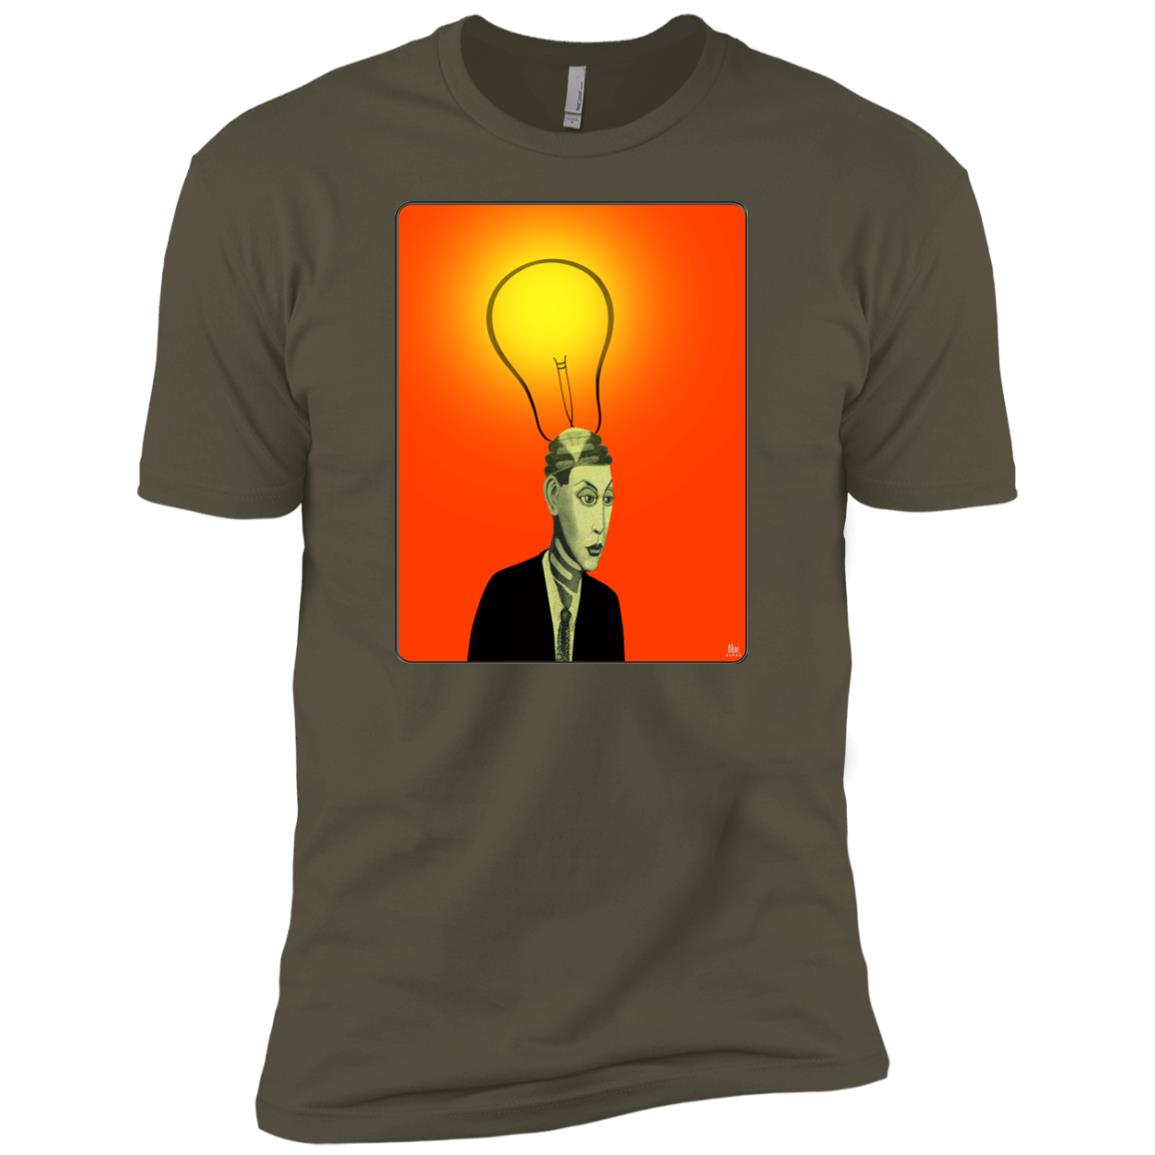 BRIGHT IDEA - Men's Premium Fitted T-Shirt